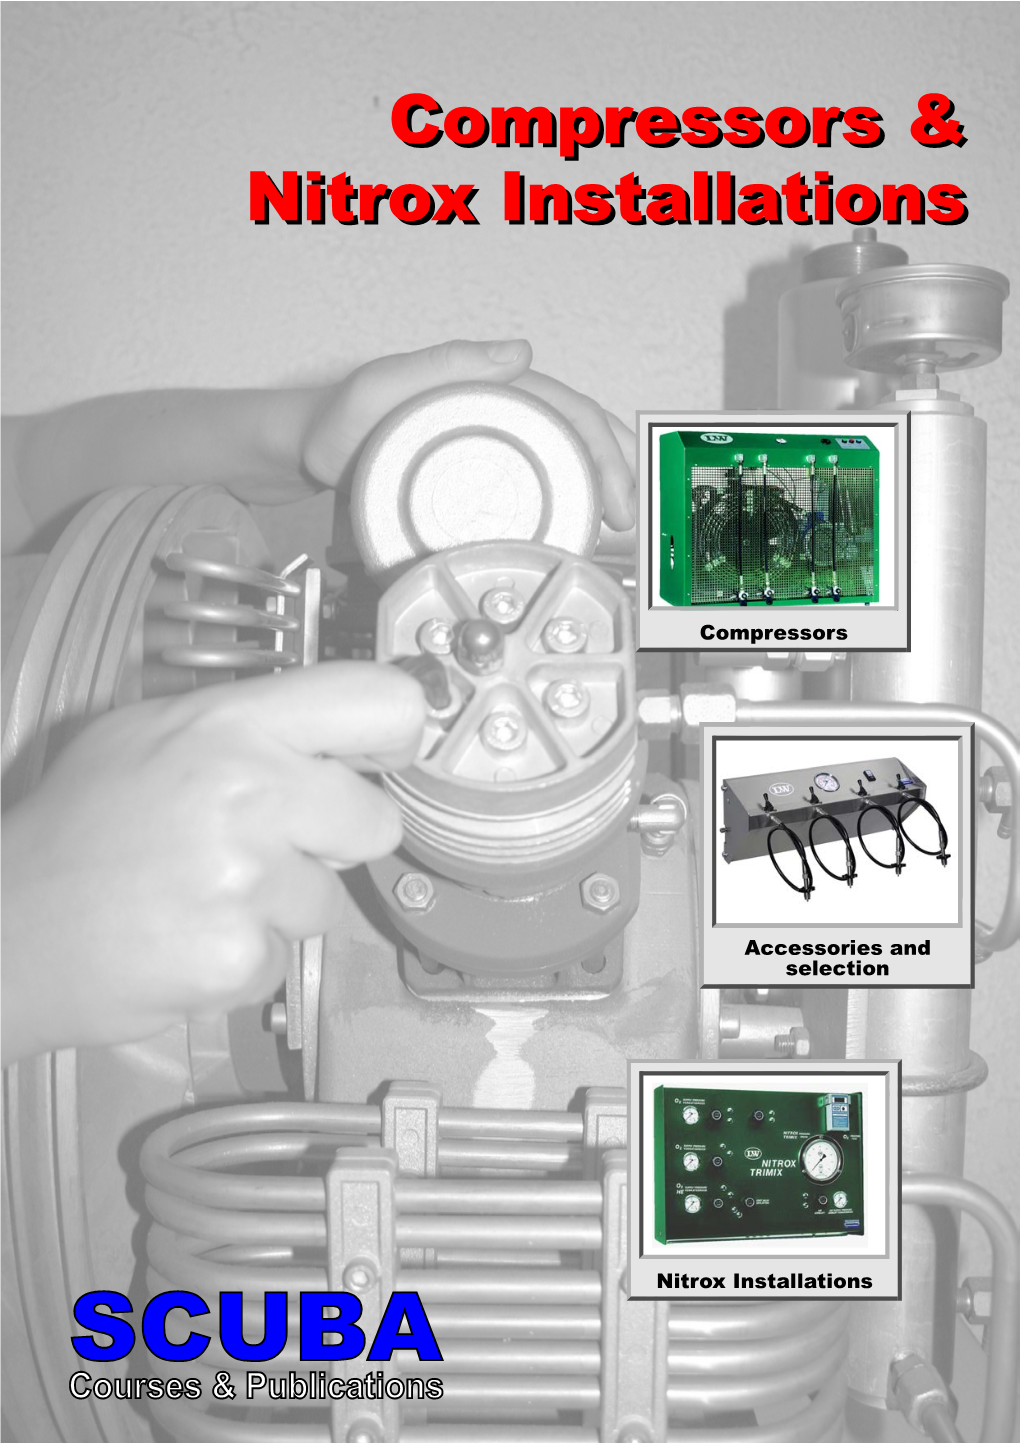 Compressors & Nitrox Installations Compressors & Nitrox Installations